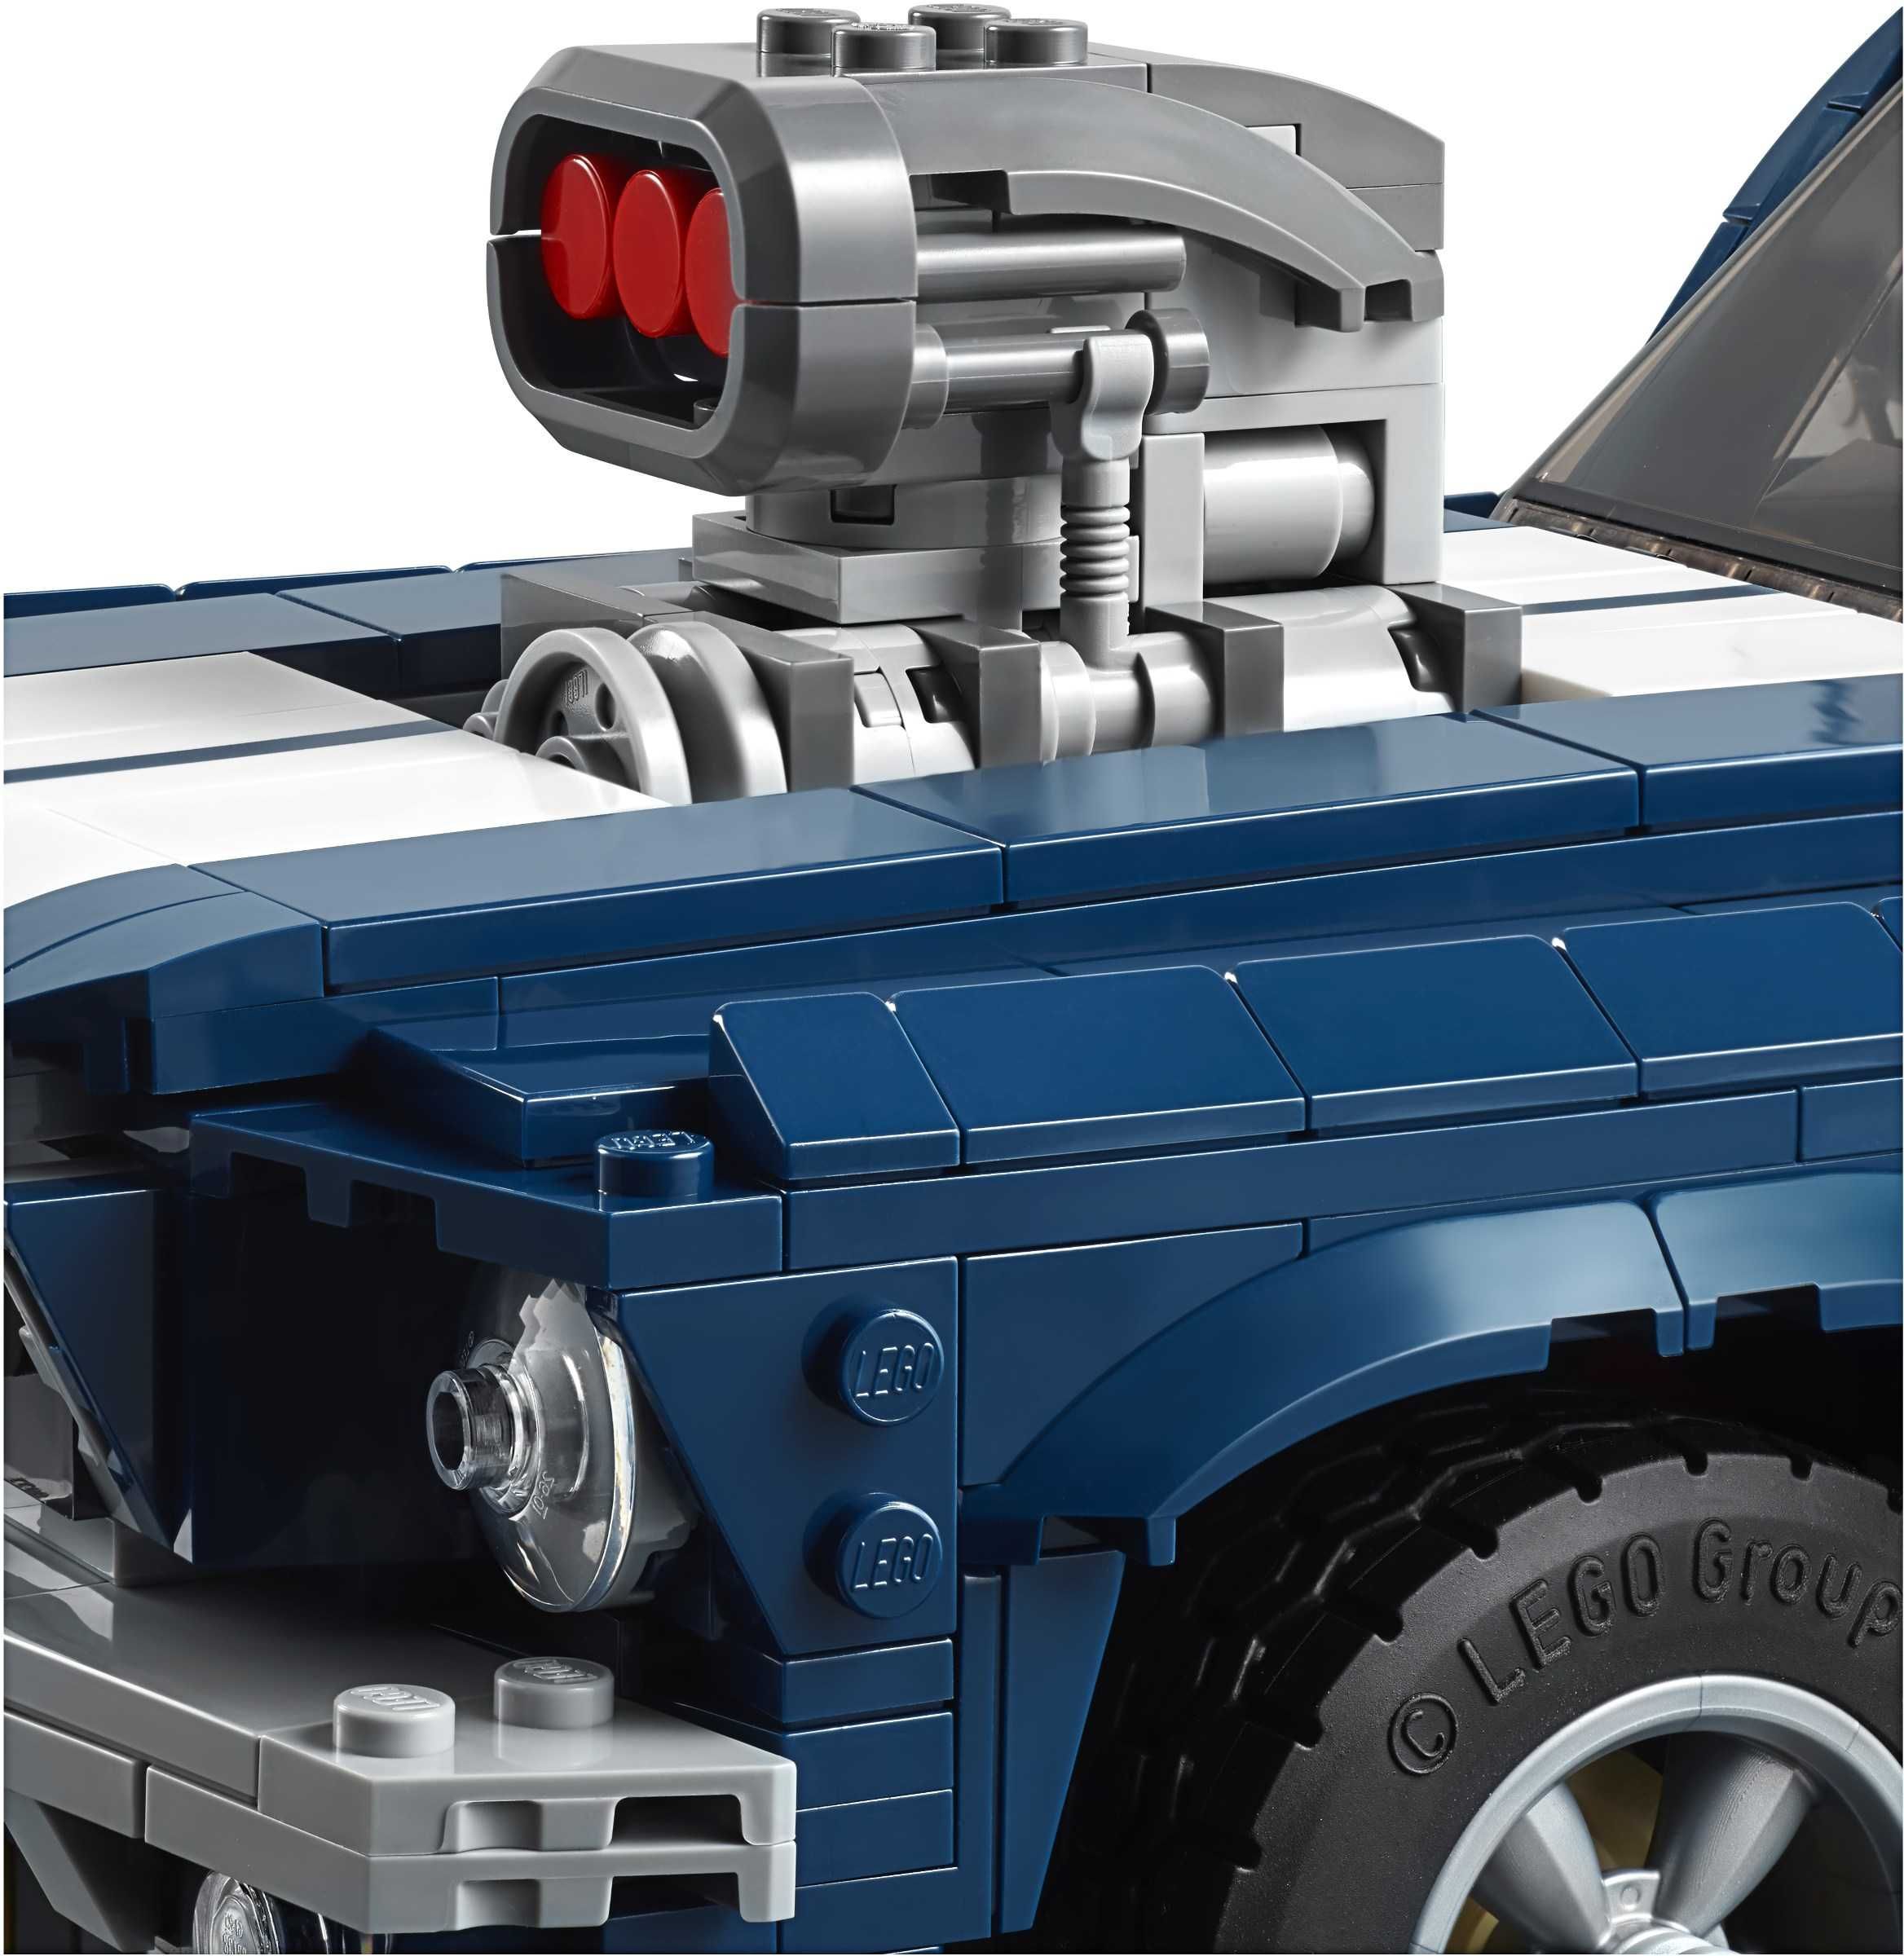 LEGO Creator Expert 10265 : Ford Mustang - set de colectie